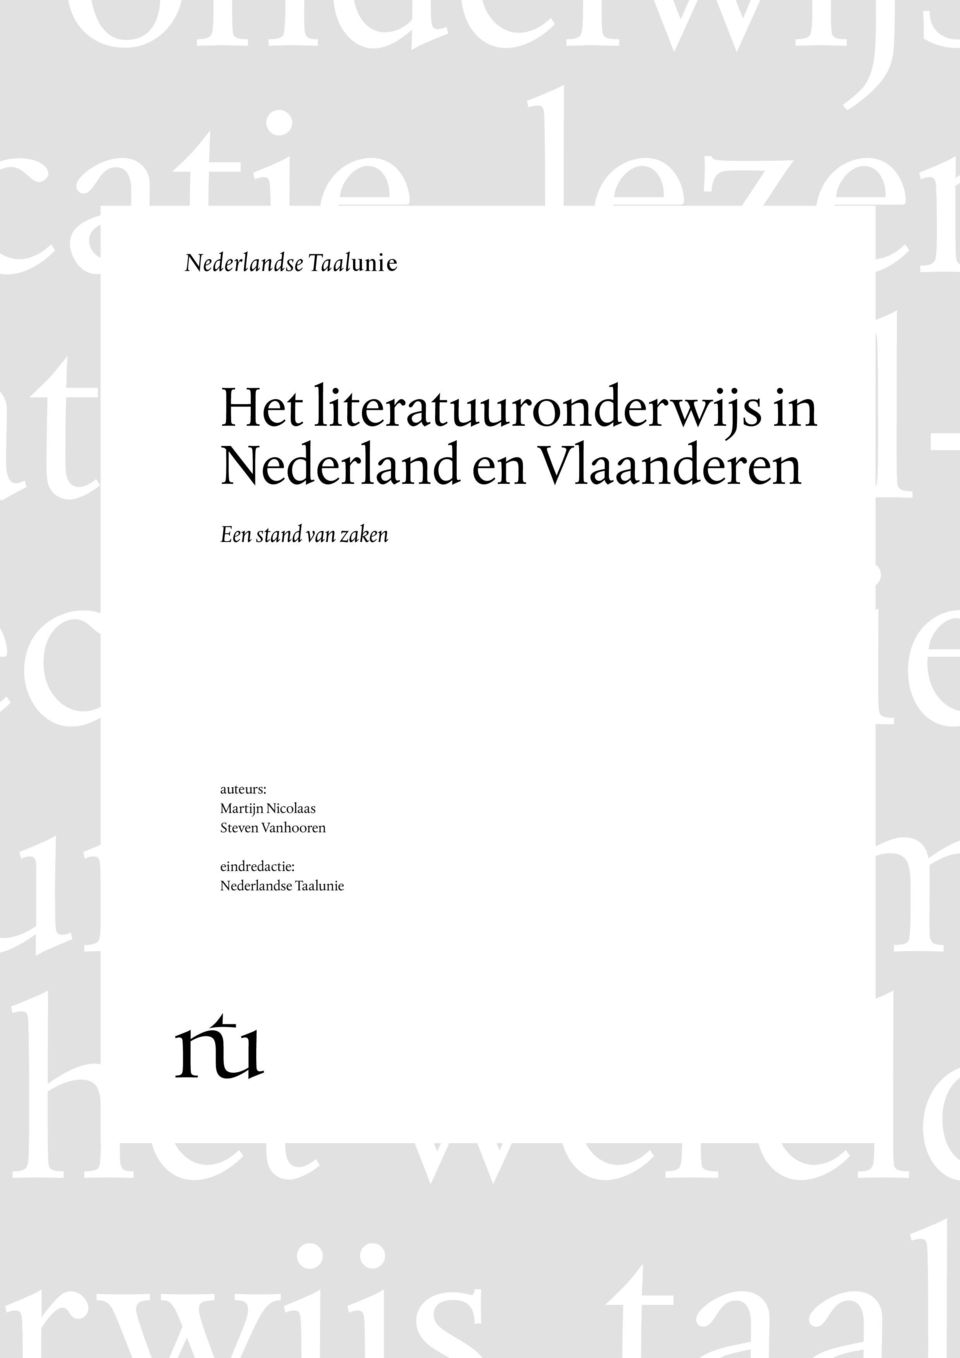 Steven Vanhooren eindredactie:  Vlaanderen.